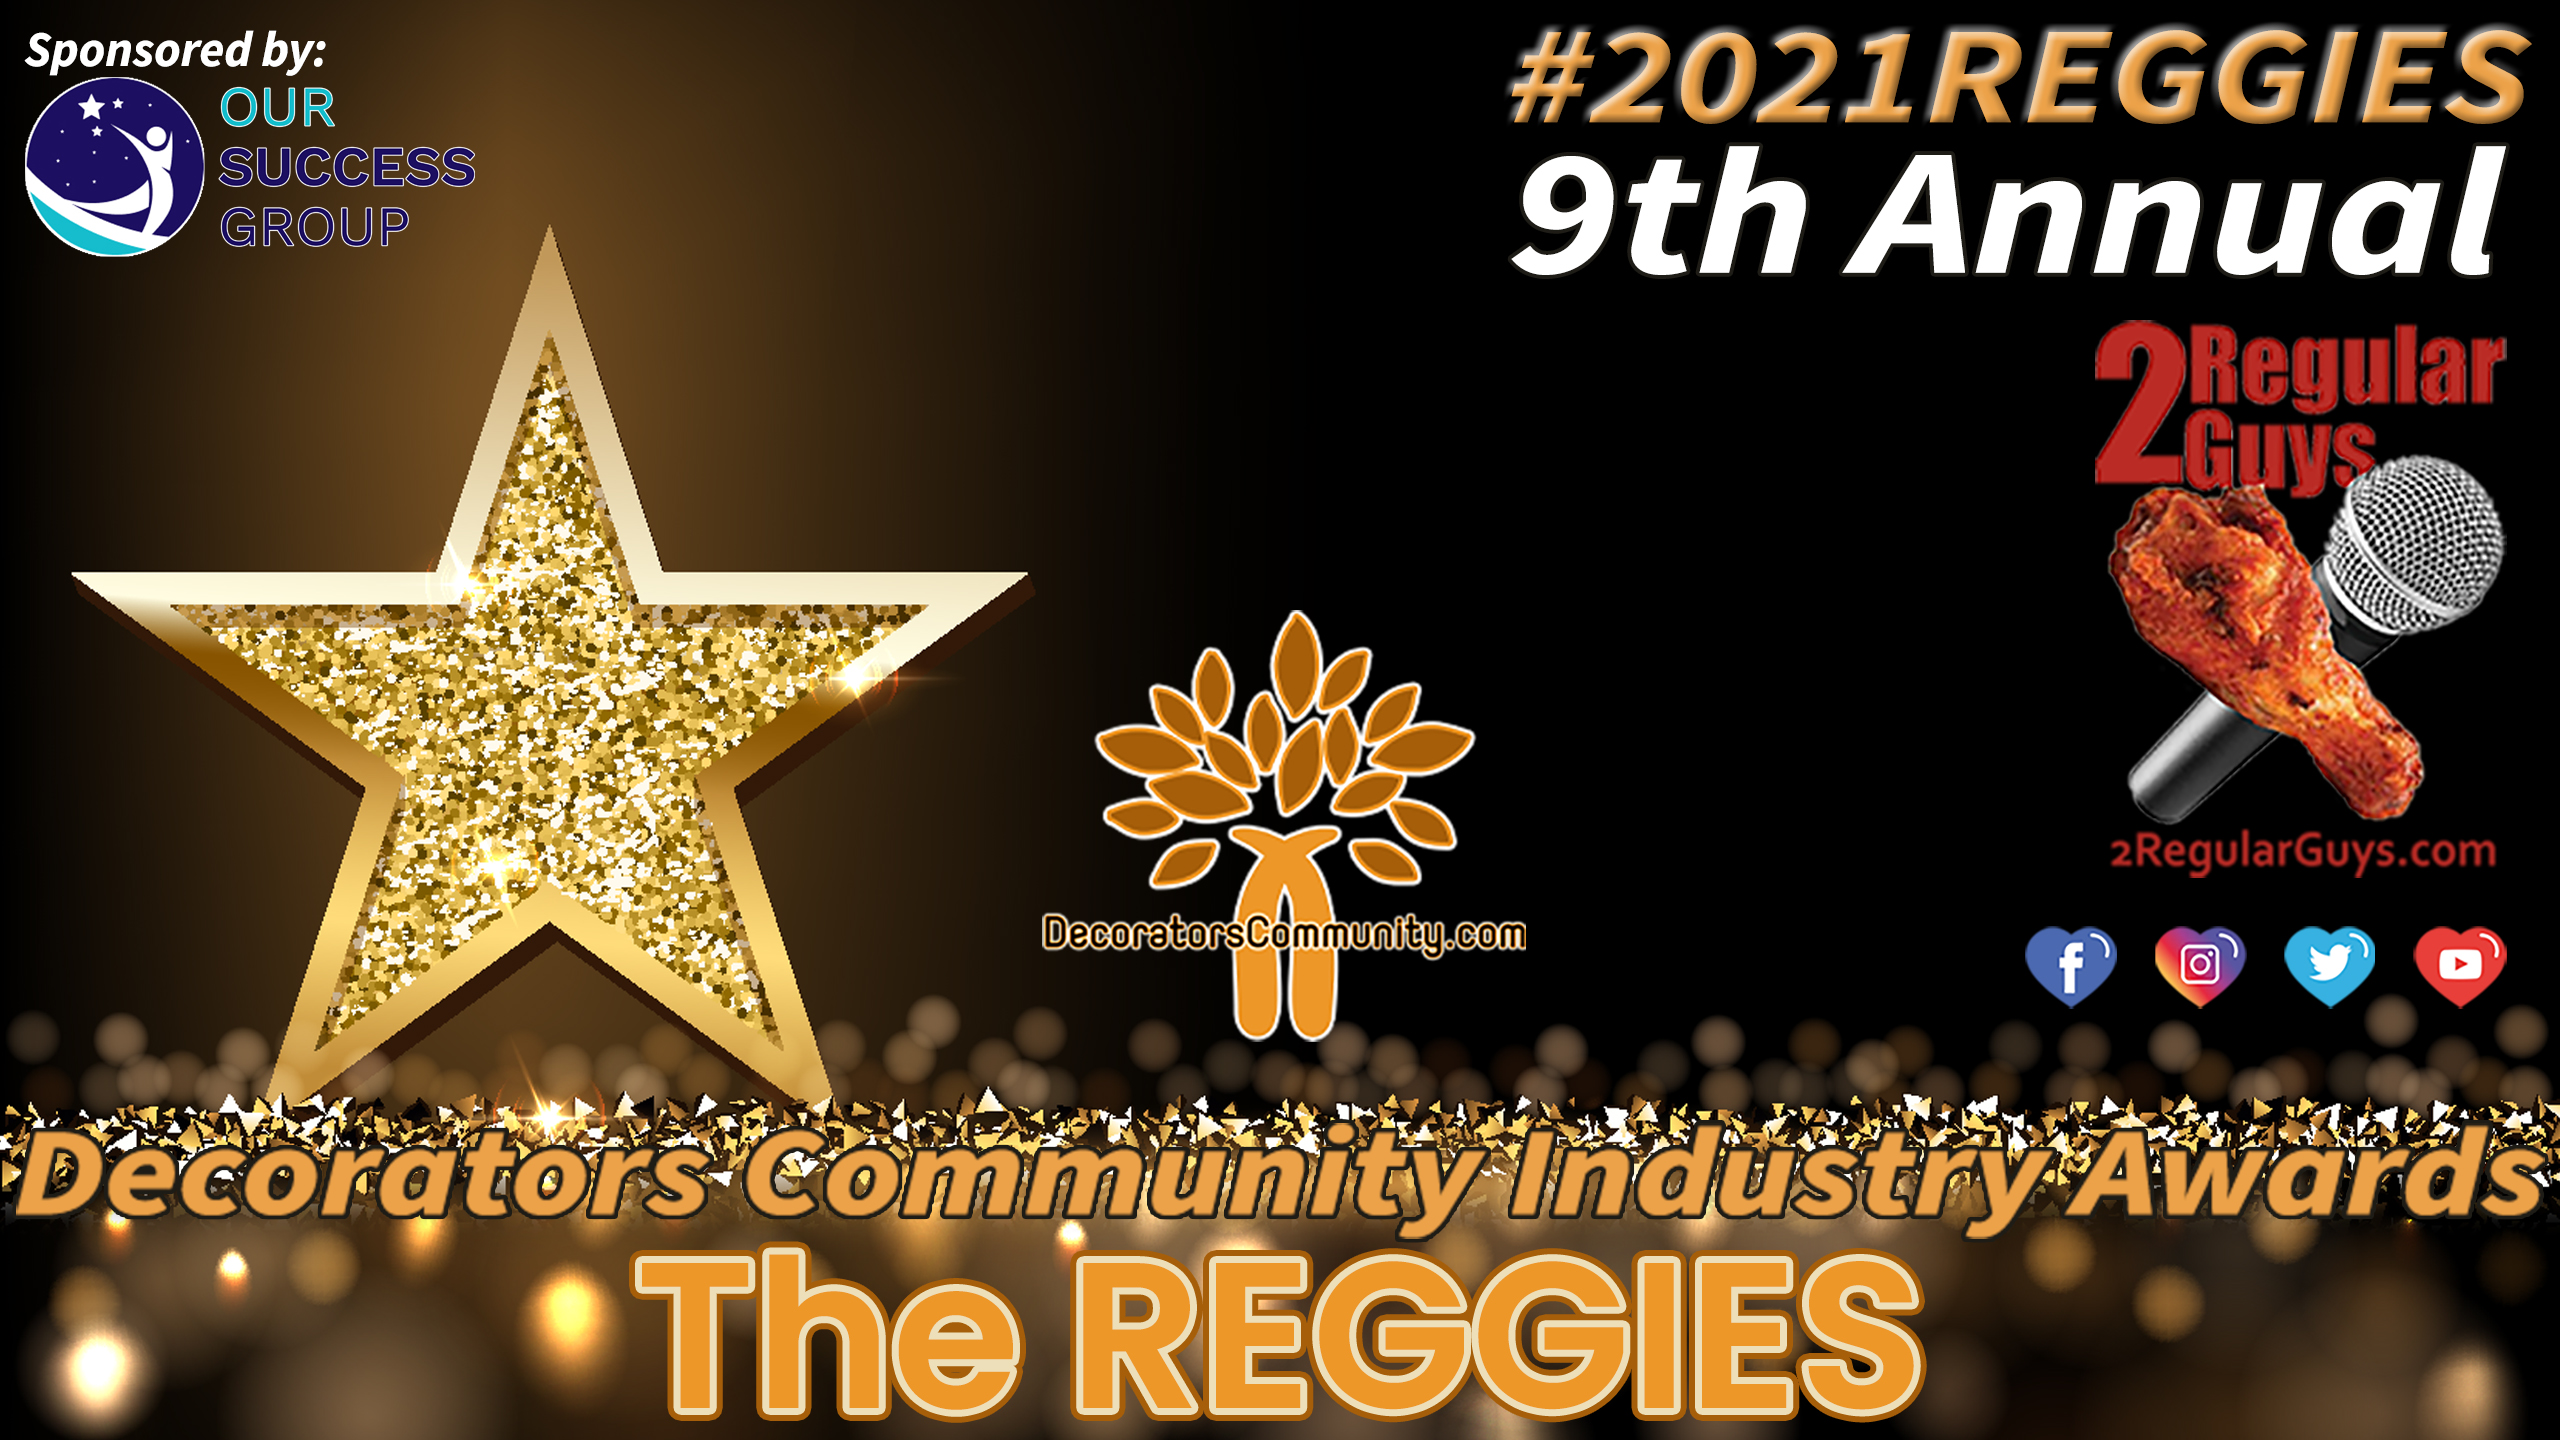 Winners Announced for 2021 REGGIE Awards